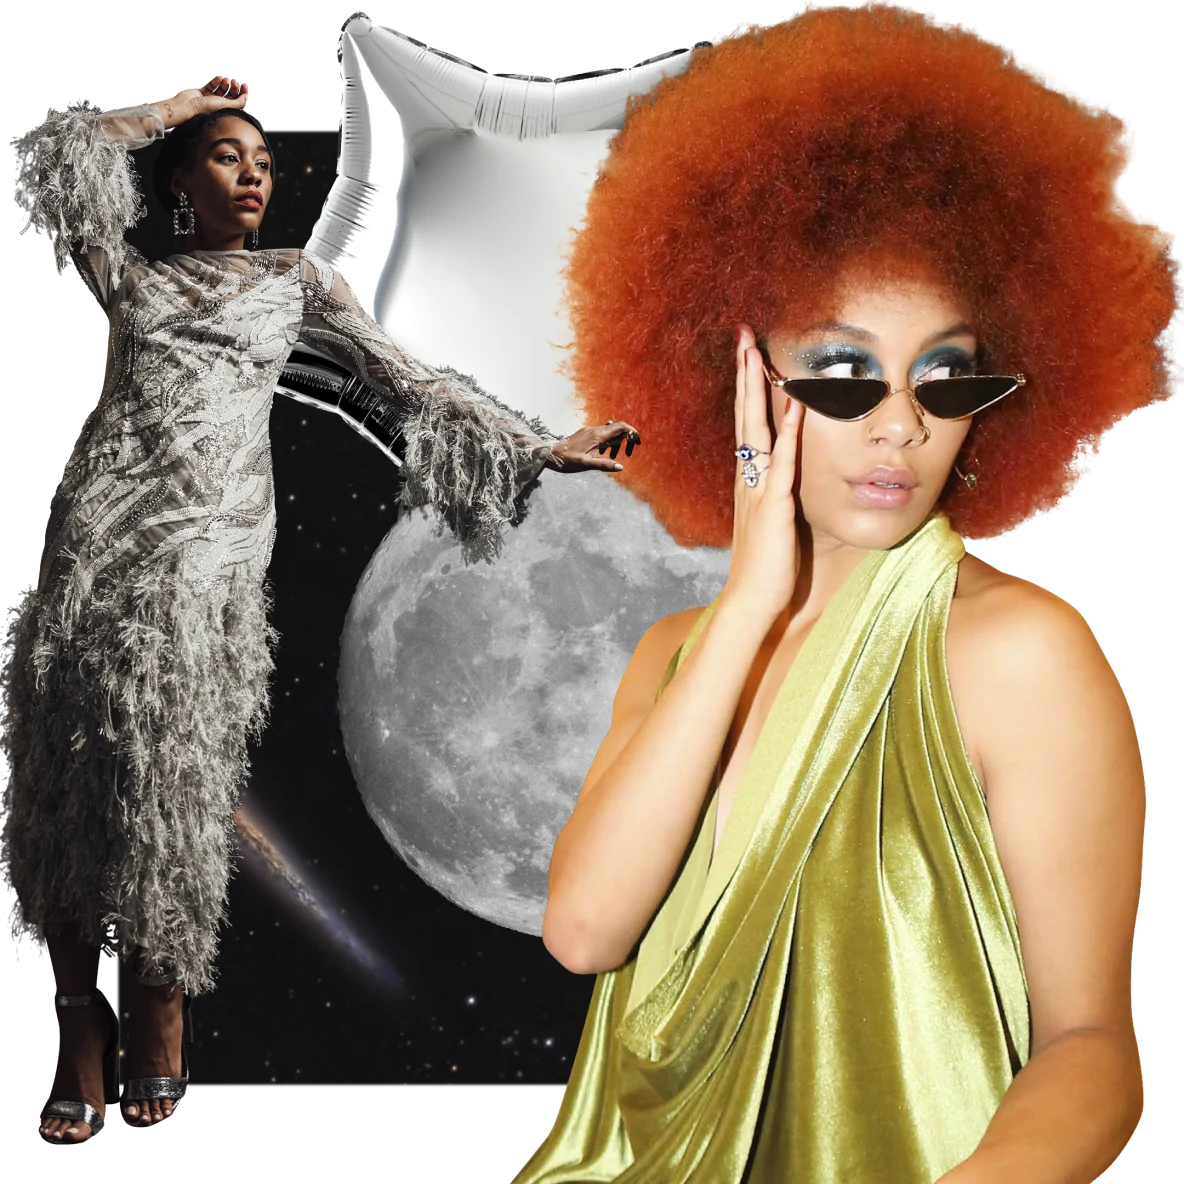 A sinistra, una donna nera con un vestito grigio piumato sembra appoggiarsi alla luna piena. A destra, una donna nera con capelli rossi e un vestito verde di seta. Sullo sfondo lo spazio e in alto un palloncino argentato a forma di stella.